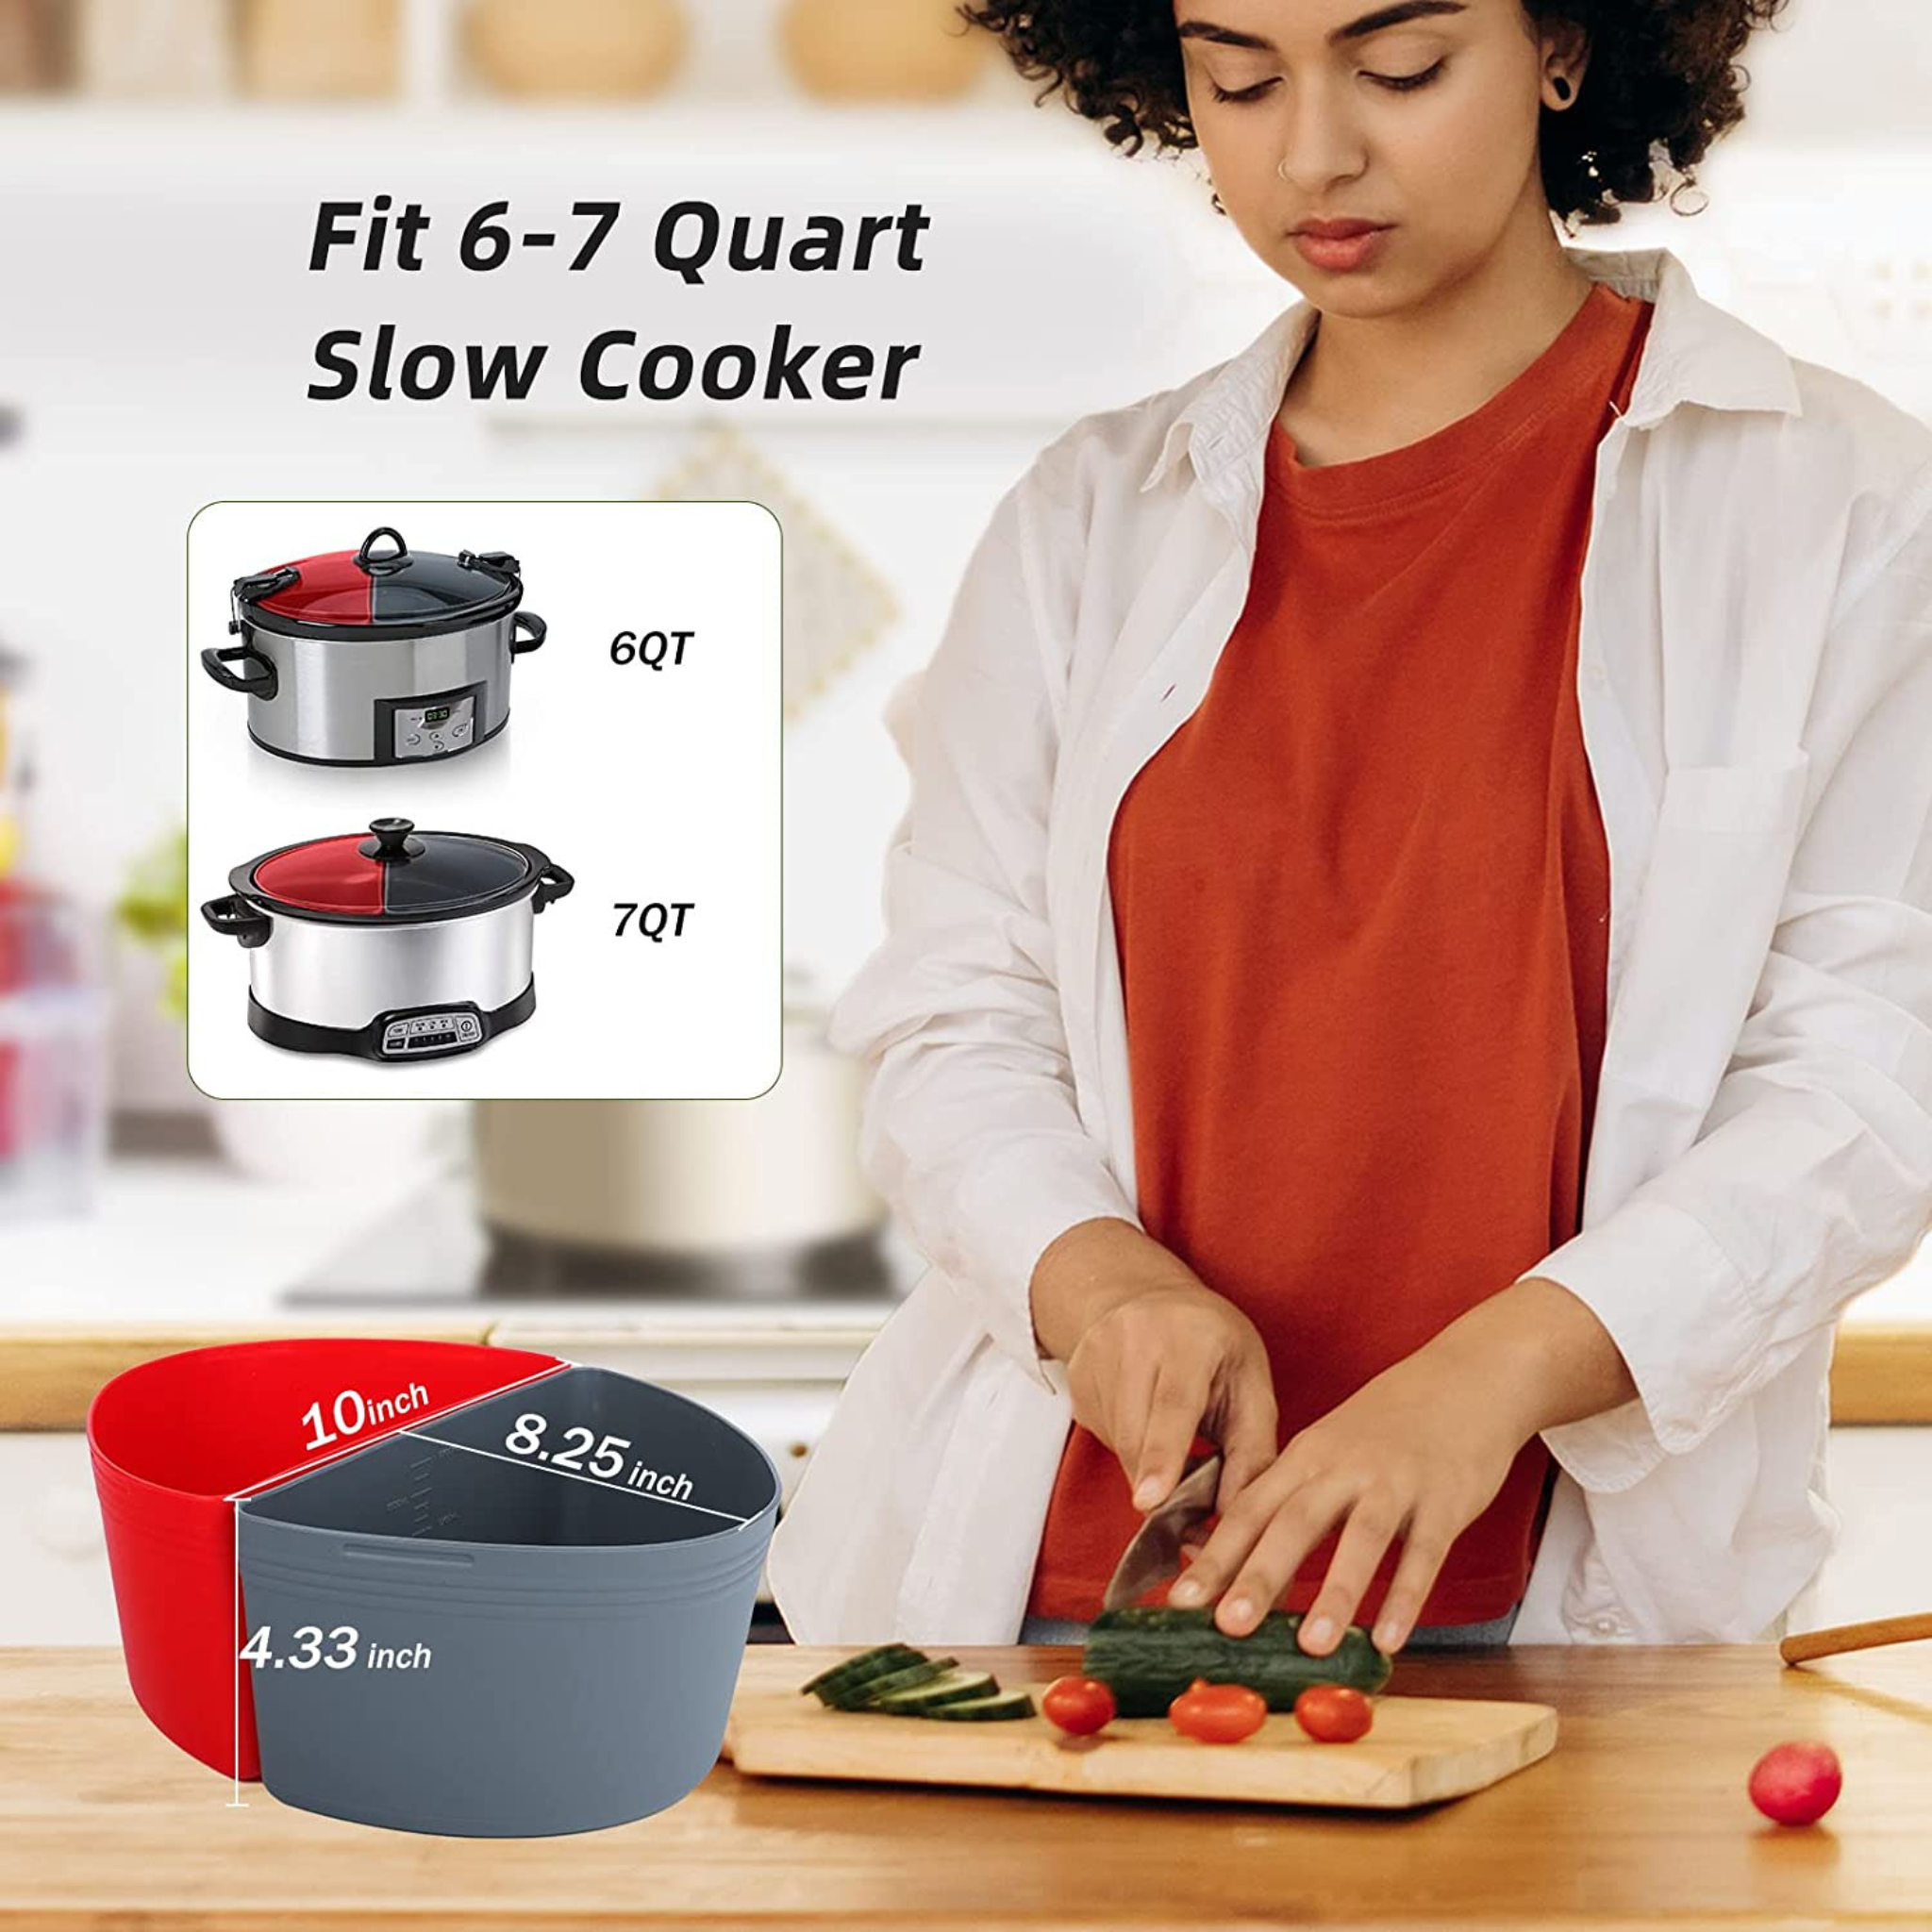 Die Slow-Cooker-Einsätze passen auf 6–7 Quart Crock Pot-Einsätze 